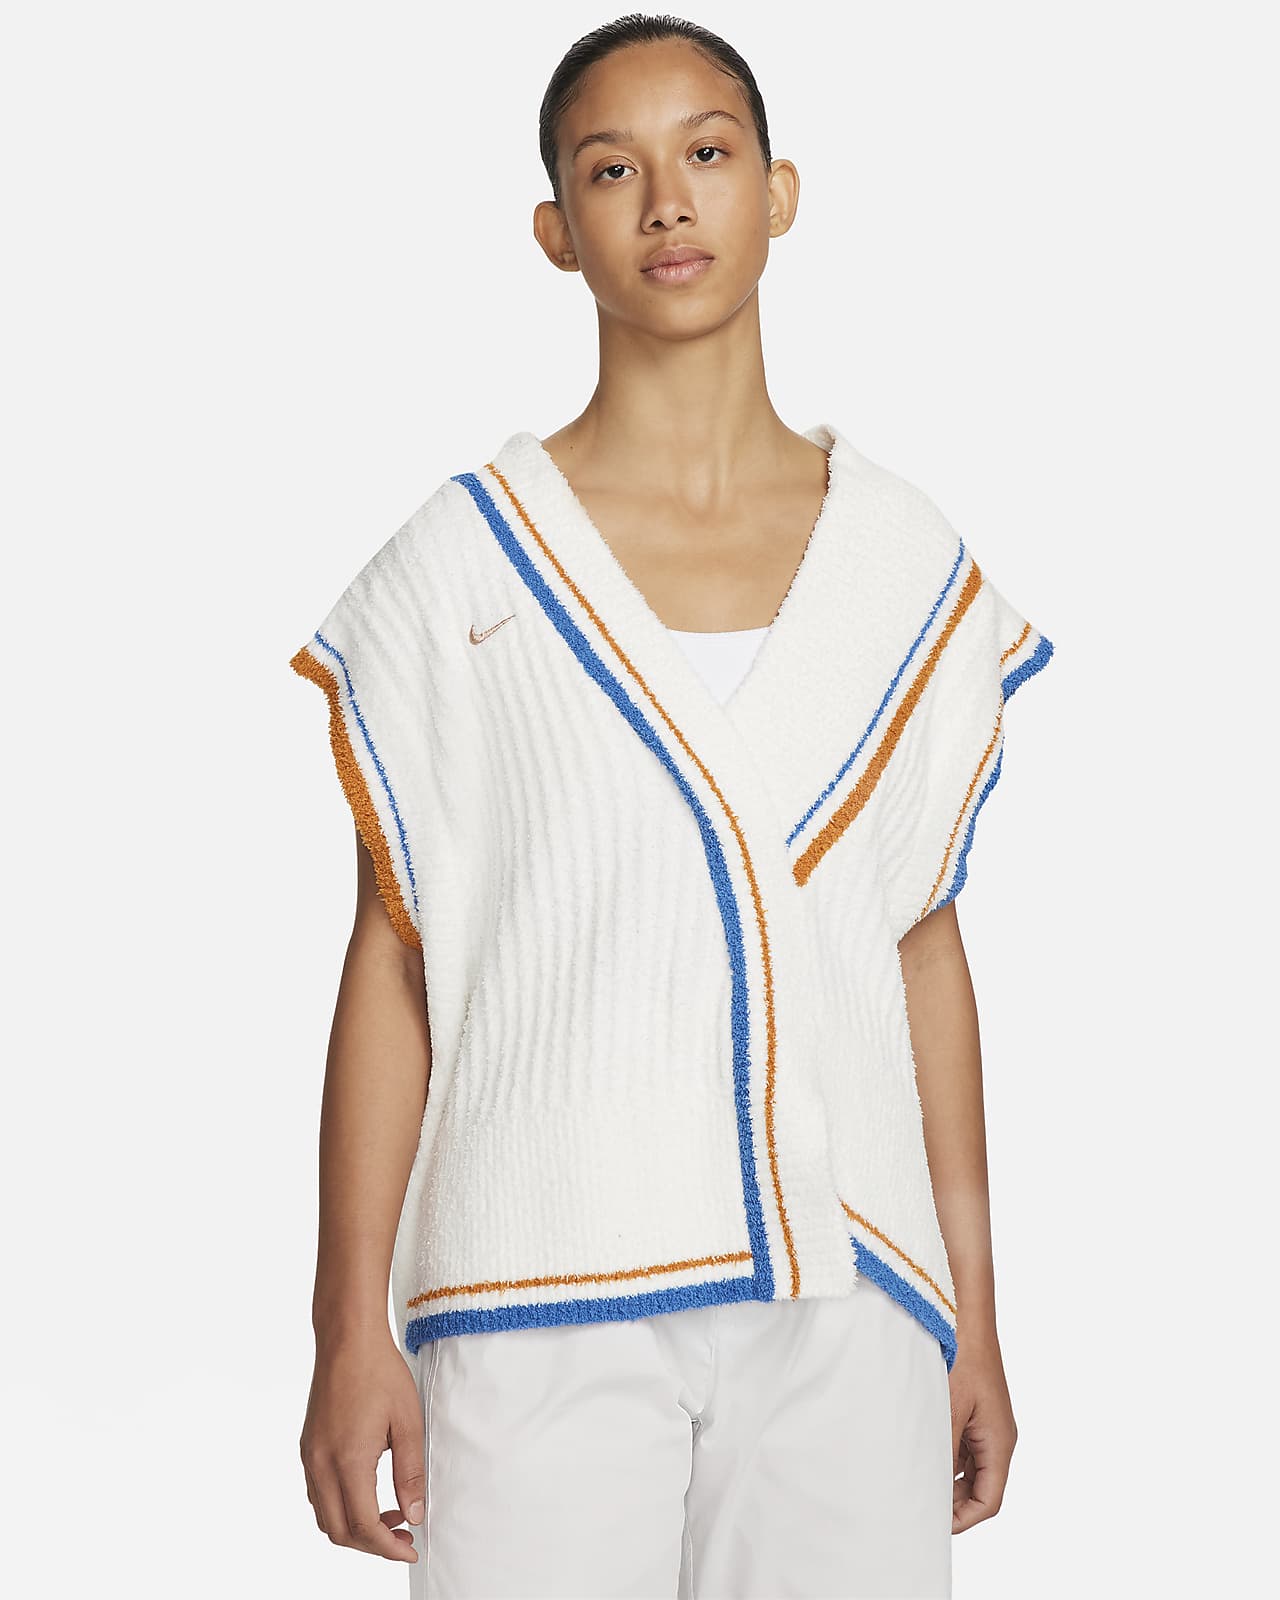 Nike Sportswear Collection Women's Knit Vest